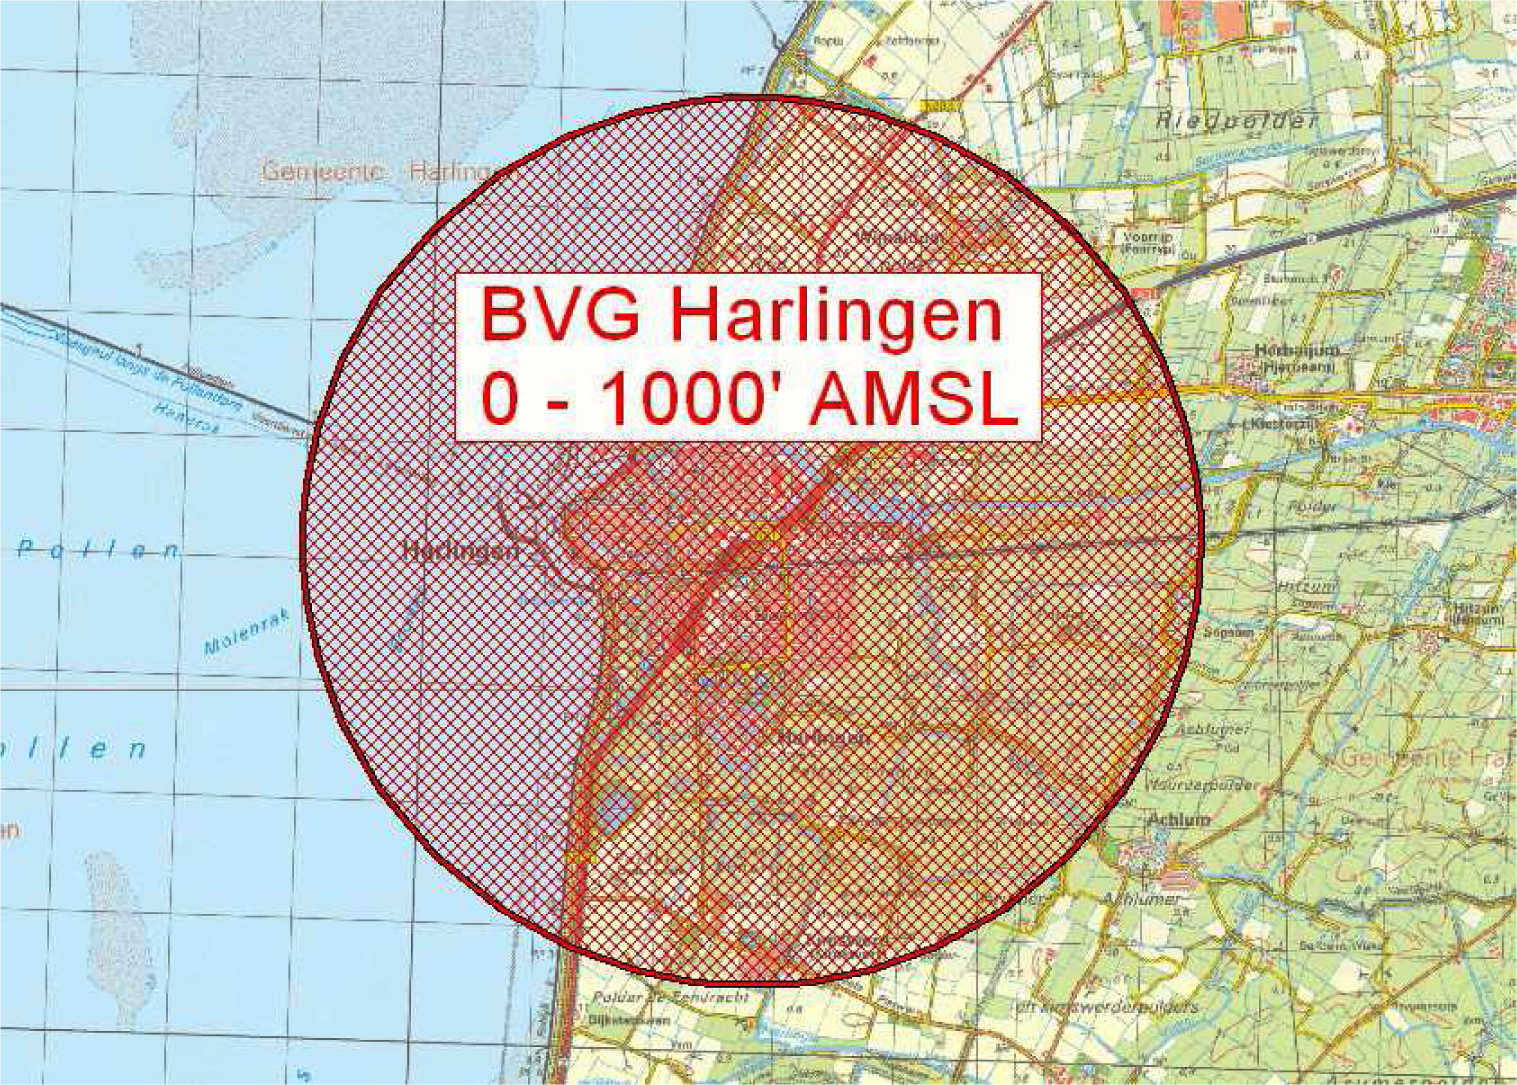 Figuur: BVG Harlingen